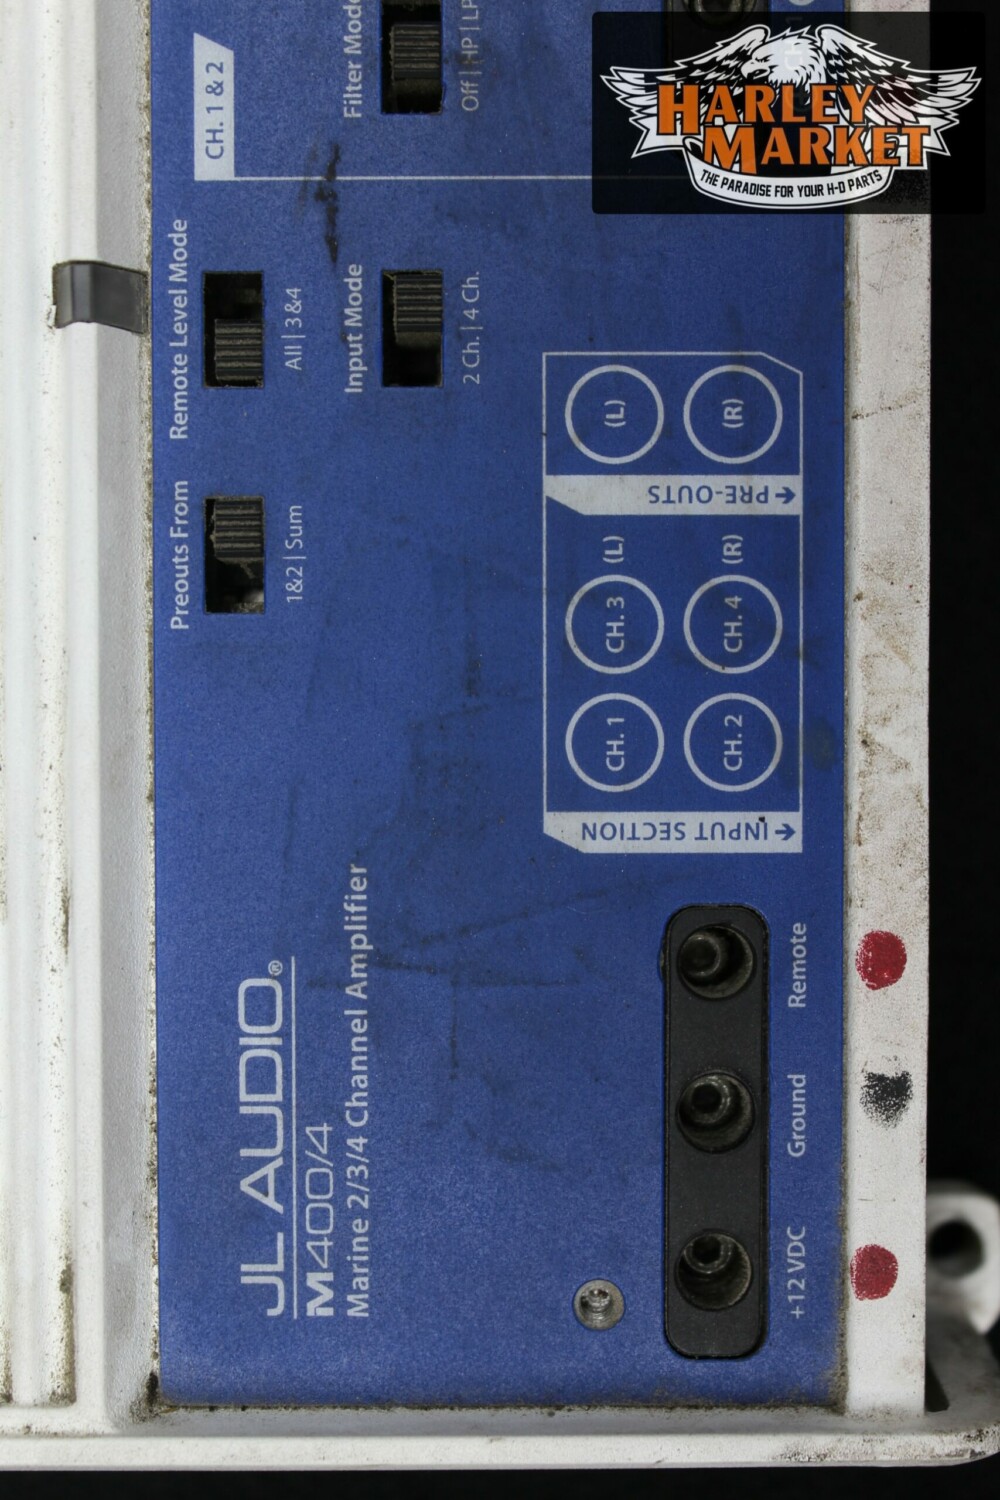 Amplificatore ultracompatto quattro canali JL Audio m400/4